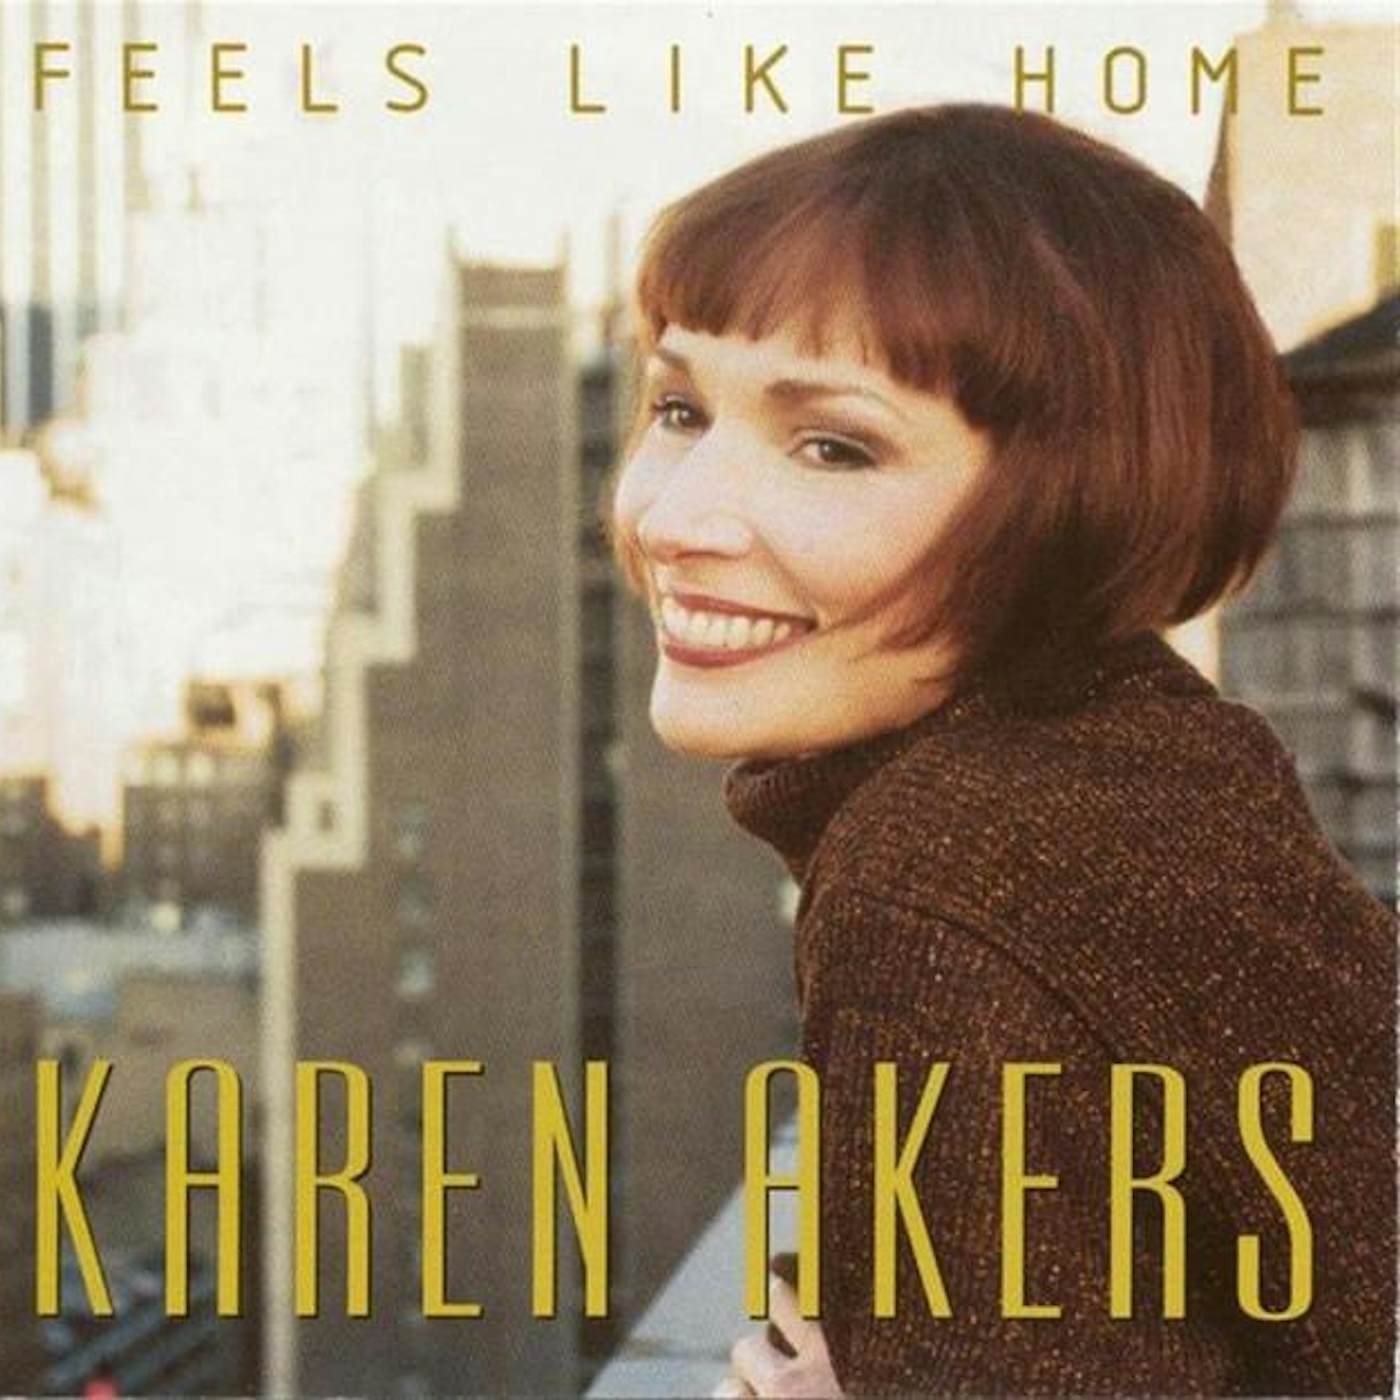 Karen Akers